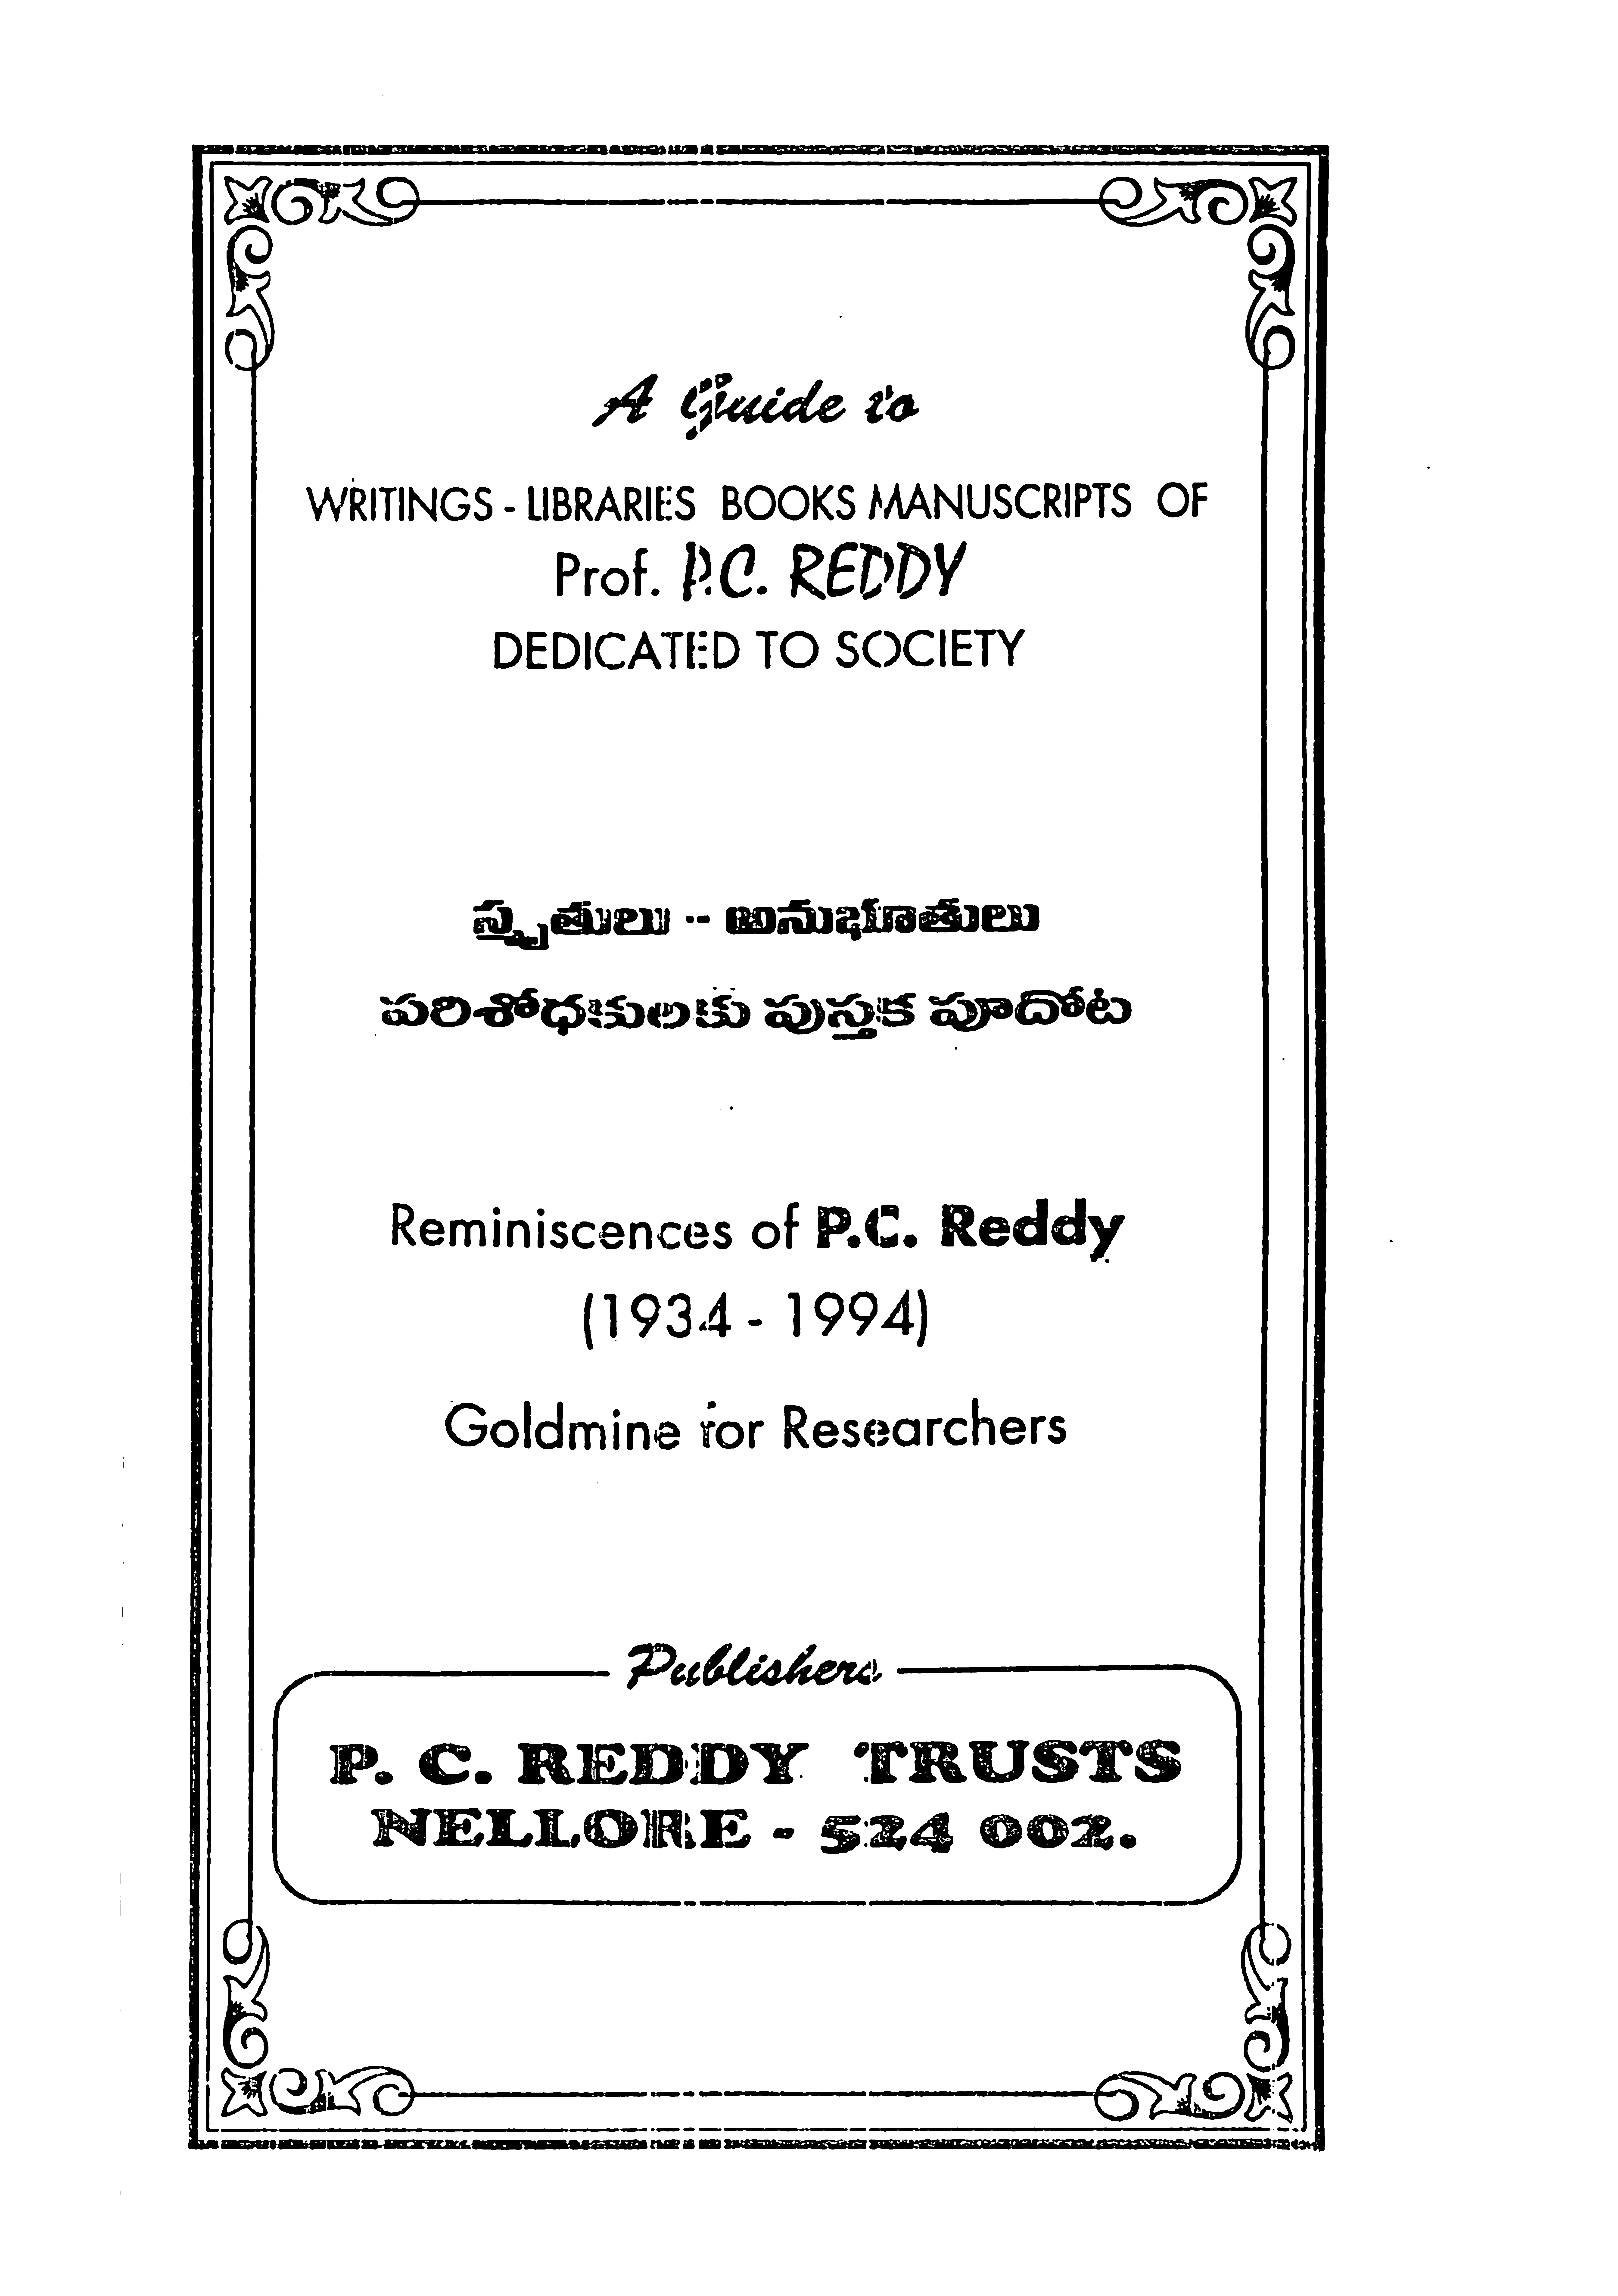 Reminiscences of P.C.Reddy (1934-1994)